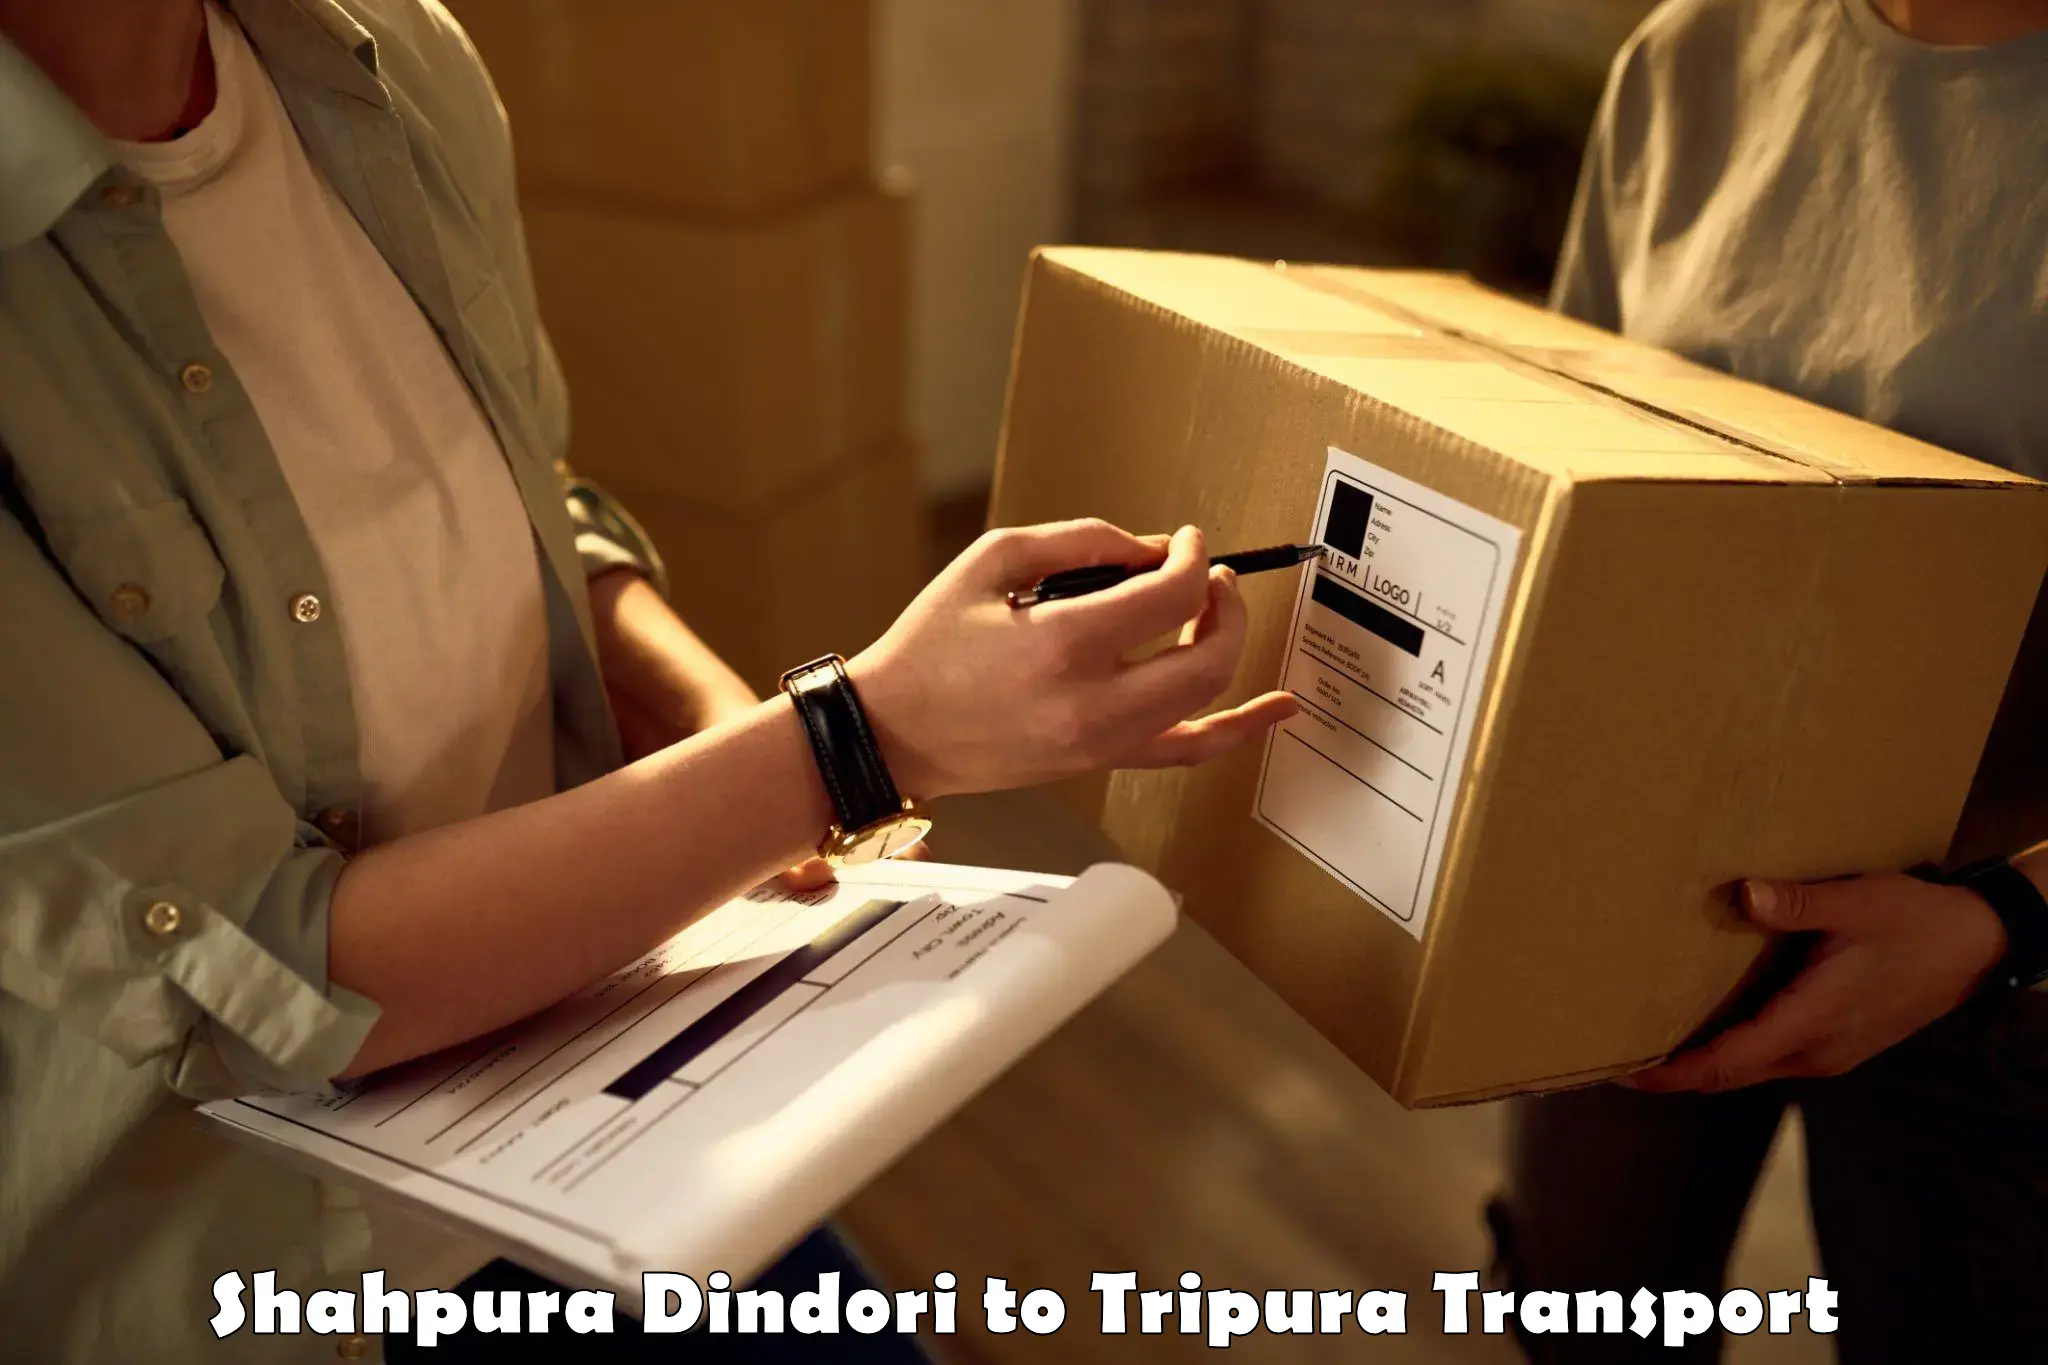 Parcel transport services in Shahpura Dindori to Udaipur Tripura